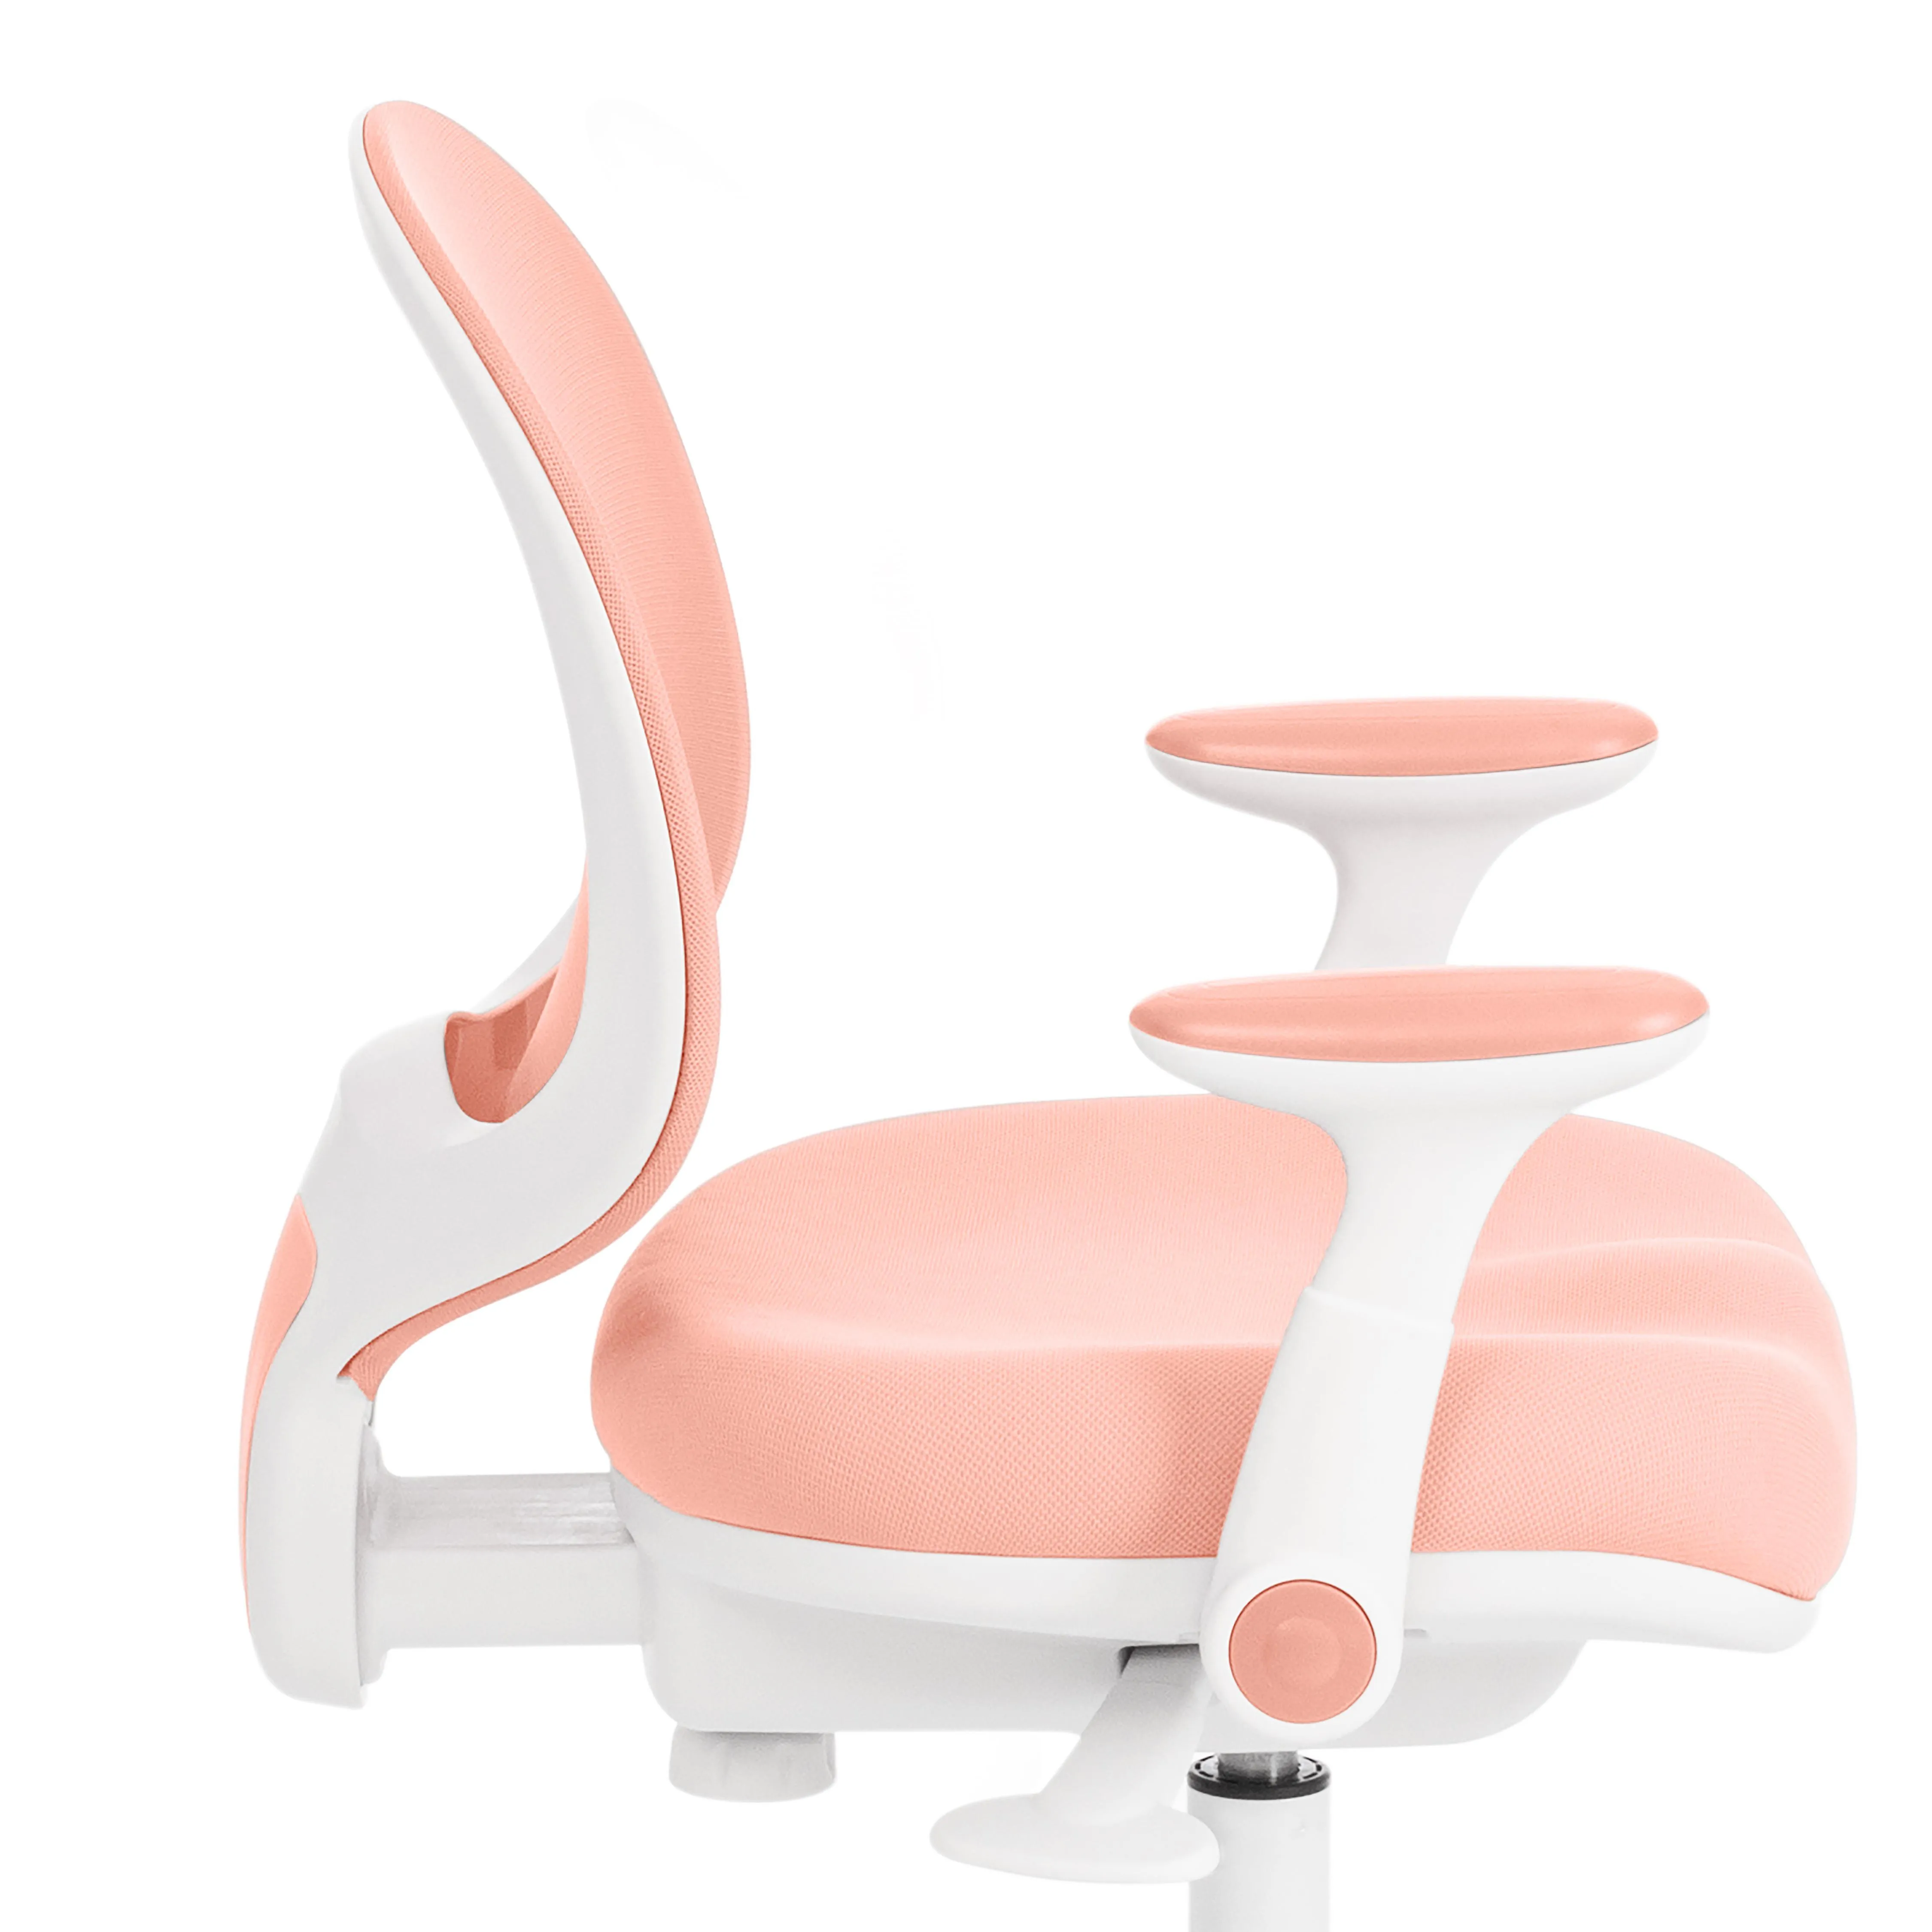 Кресло компьютерное детское RAINBOW розовый